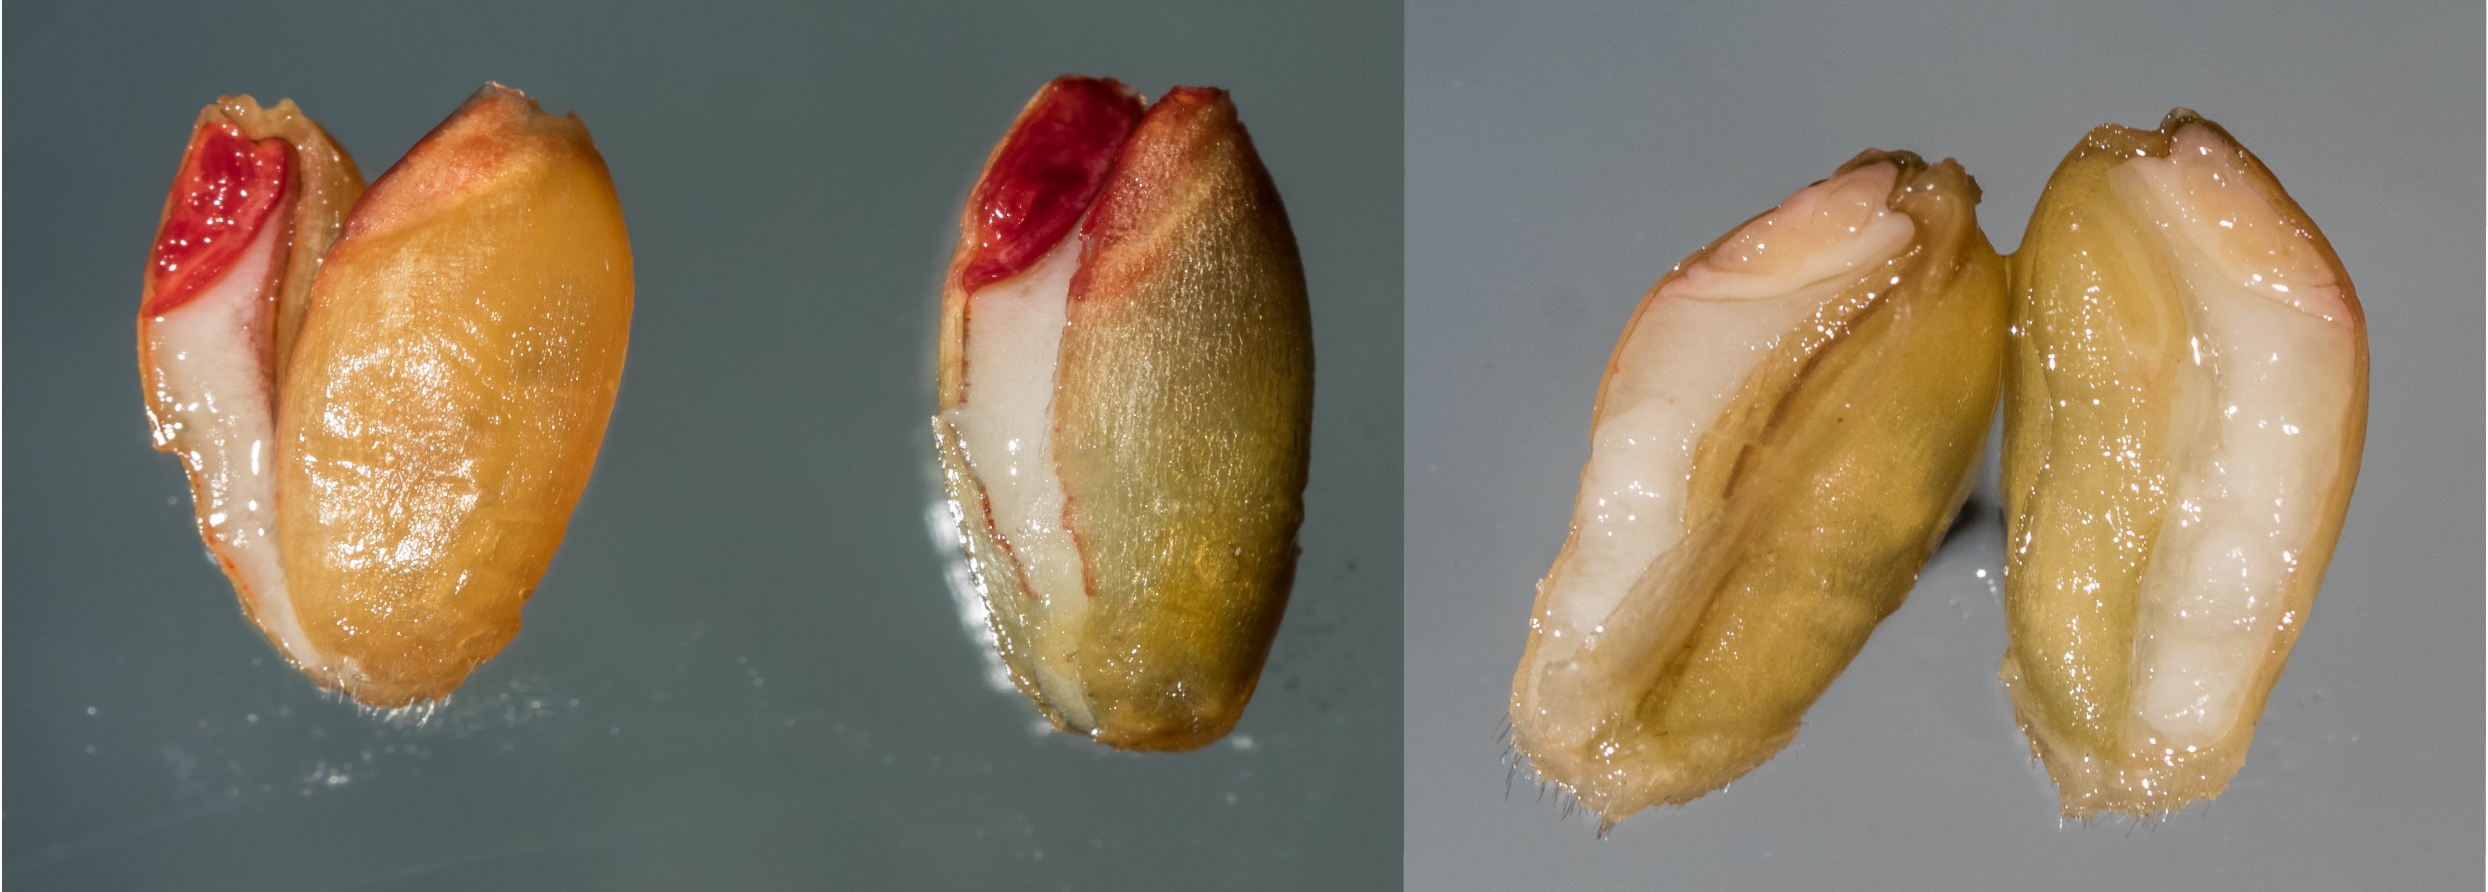 Kuvassa on kolme halkaistua viljan siementä. Kahden vasemmanpuoleisen siemenen alkion solukko on punaista. Kolmannen siemenen alkion solukko on valkoista.